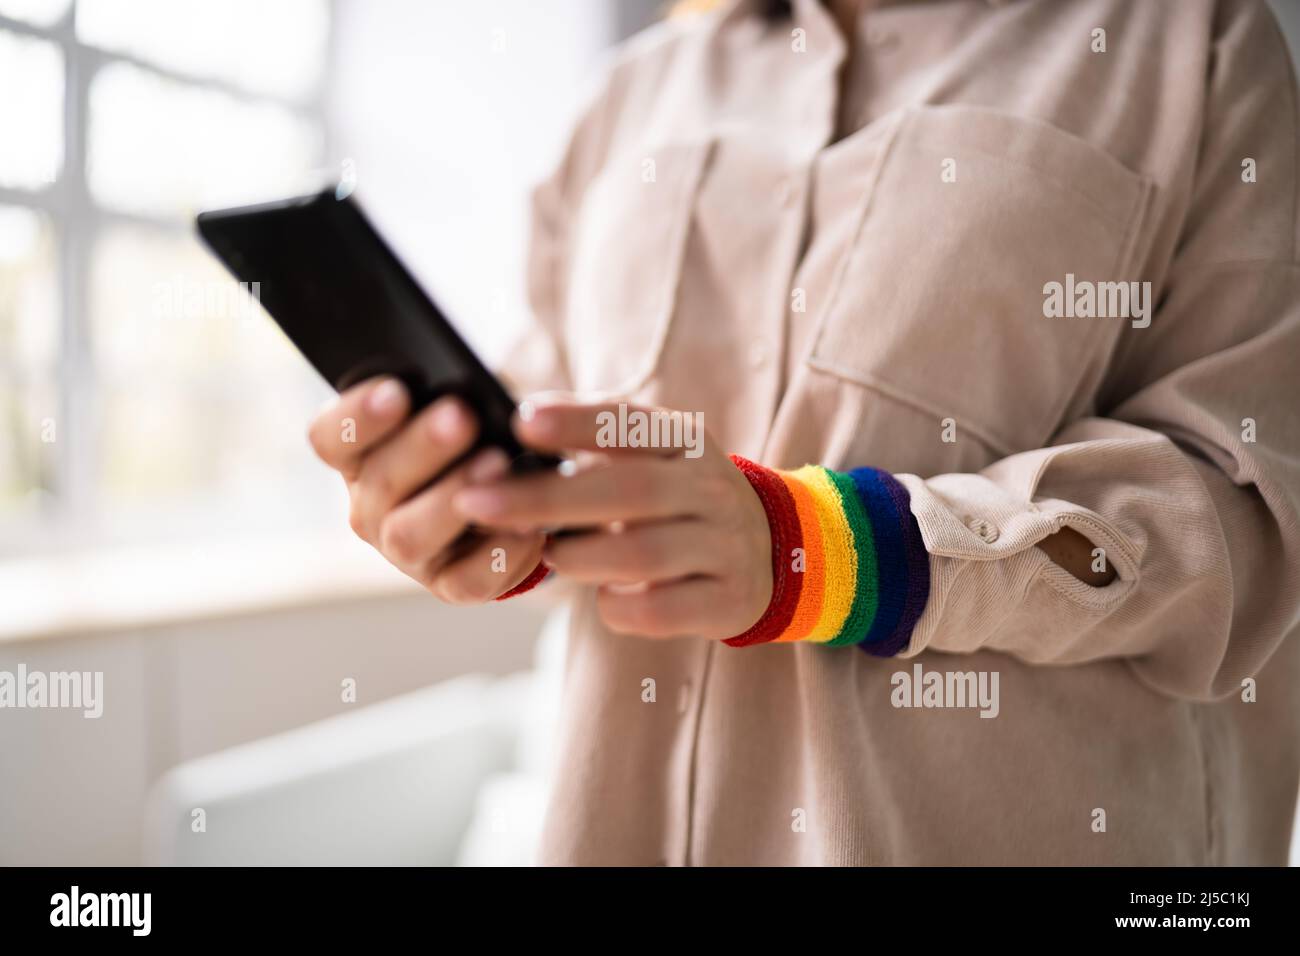 Inklusion Und Vielfalt. LGBT Regenbogenarmband. Gleichstellung Am Arbeitsplatz Stockfoto